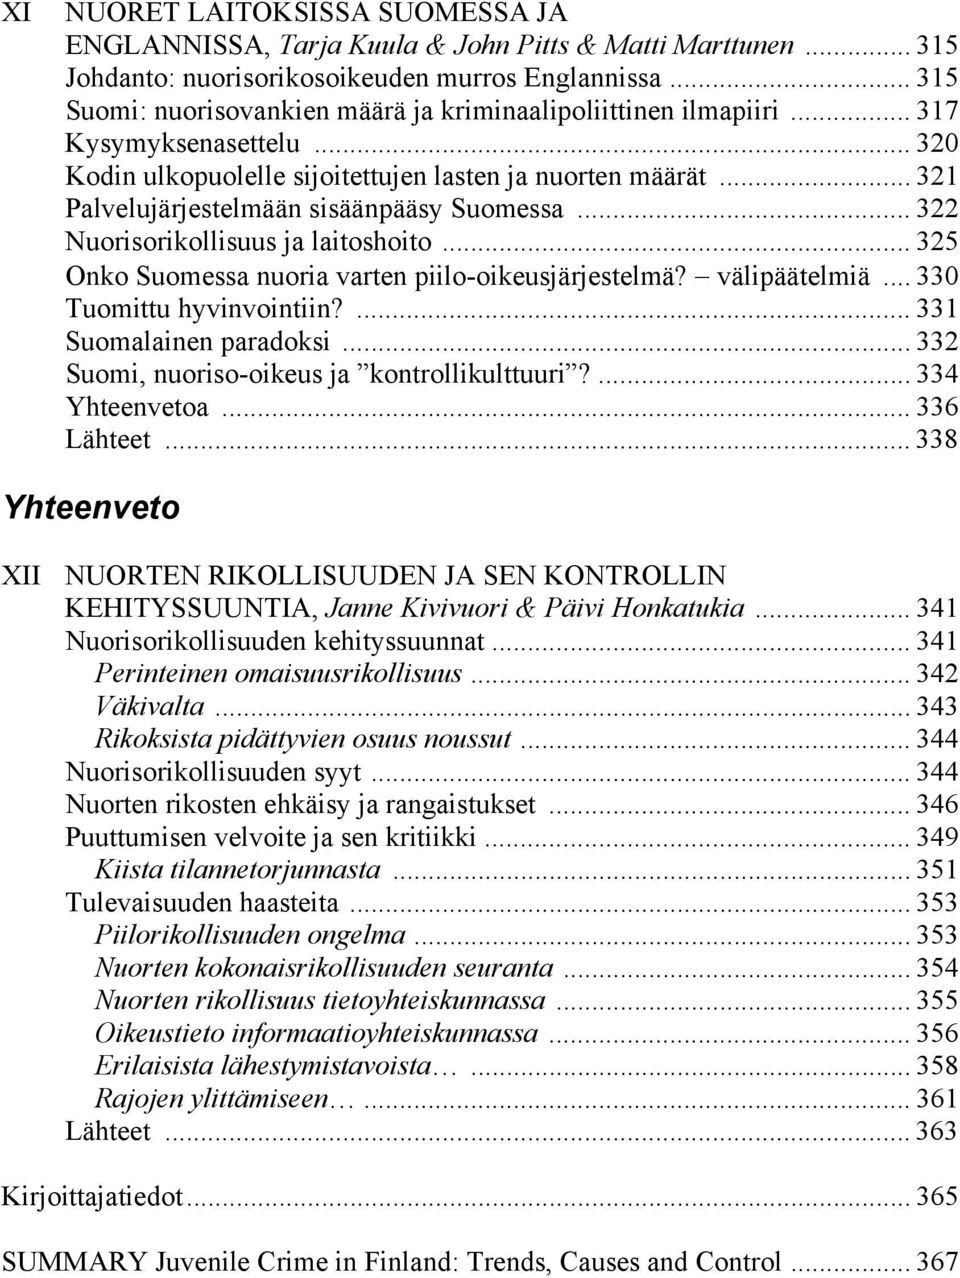 .. 321 Palvelujärjestelmään sisäänpääsy Suomessa... 322 Nuorisorikollisuus ja laitoshoito... 325 Onko Suomessa nuoria varten piilo-oikeusjärjestelmä? välipäätelmiä... 330 Tuomittu hyvinvointiin?